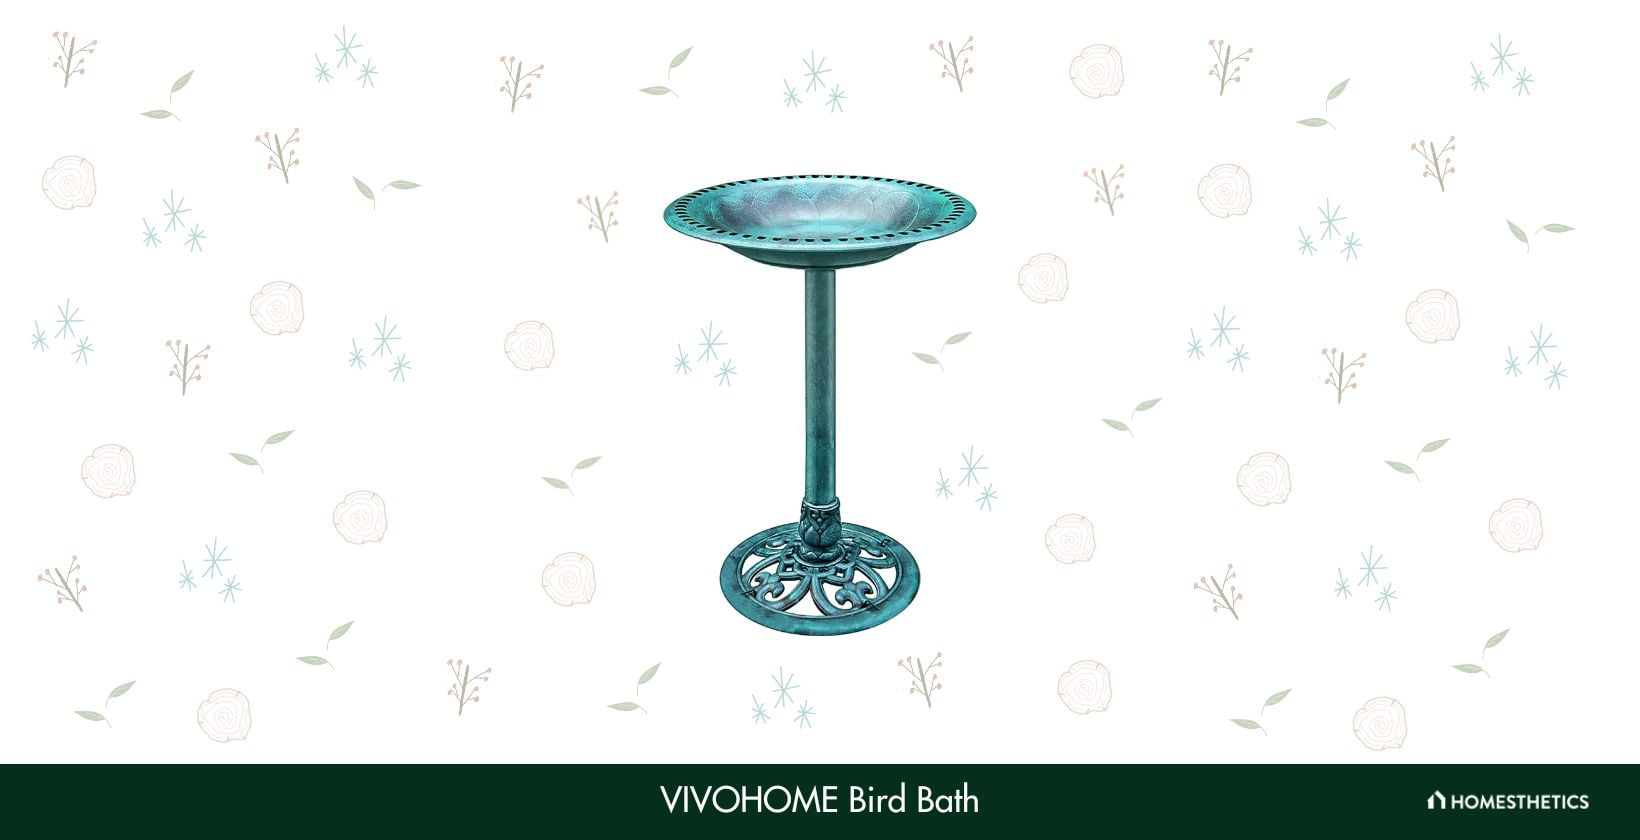 VIVOHOME Bird Bath